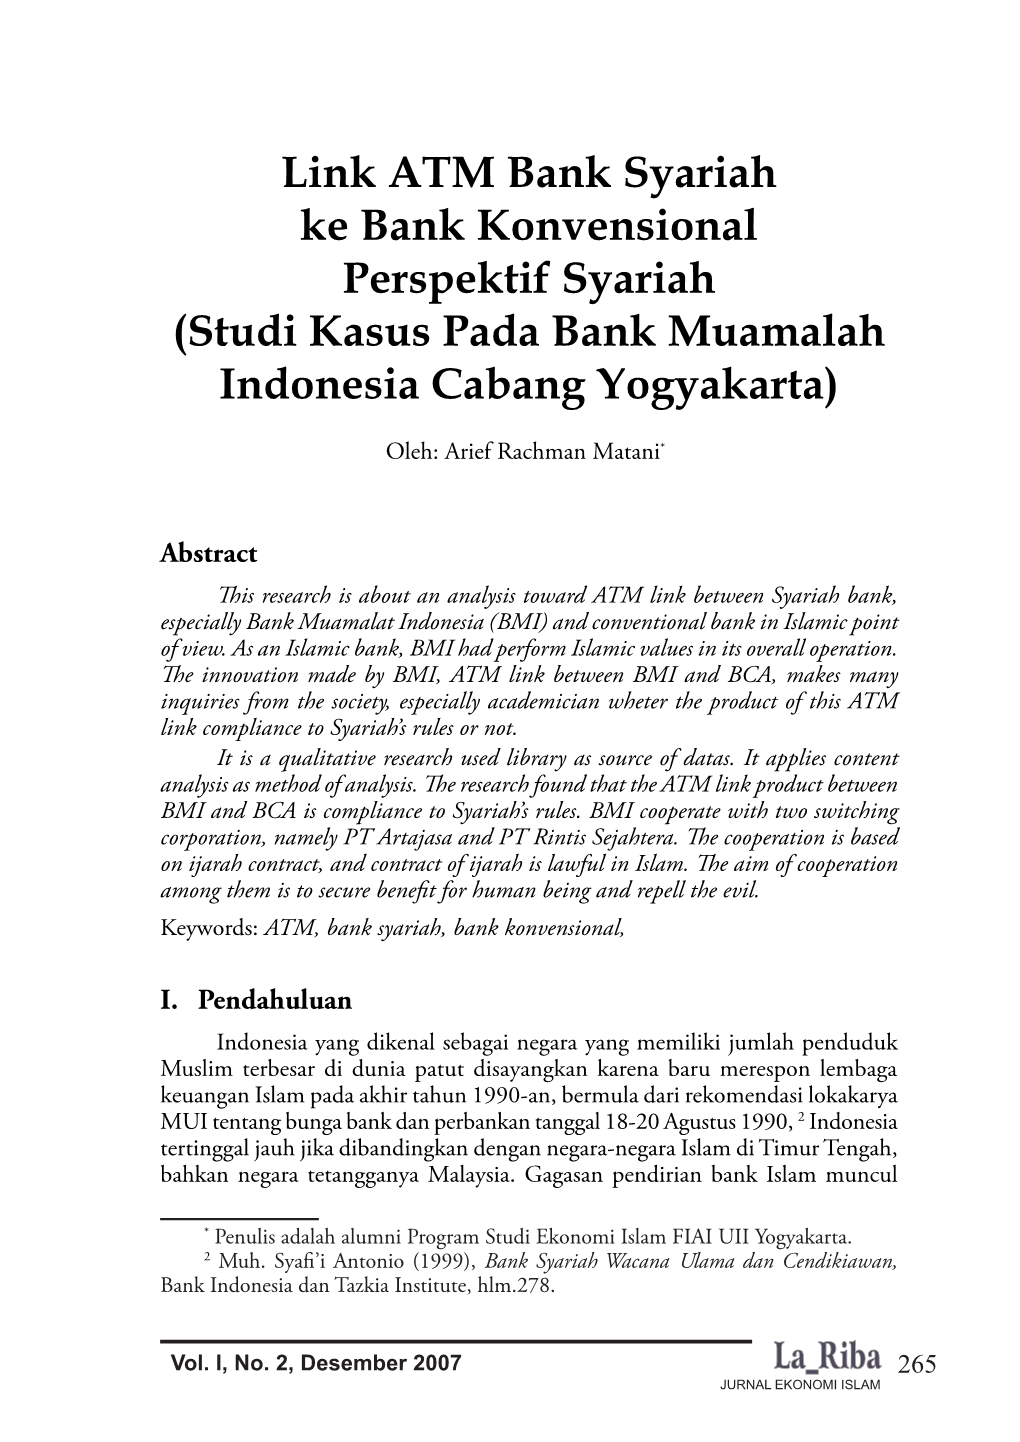 Link ATM Bank Syariah Ke Bank Konvensional Perspektif Syariah (Studi Kasus Pada Bank Muamalah Indonesia Cabang Yogyakarta)